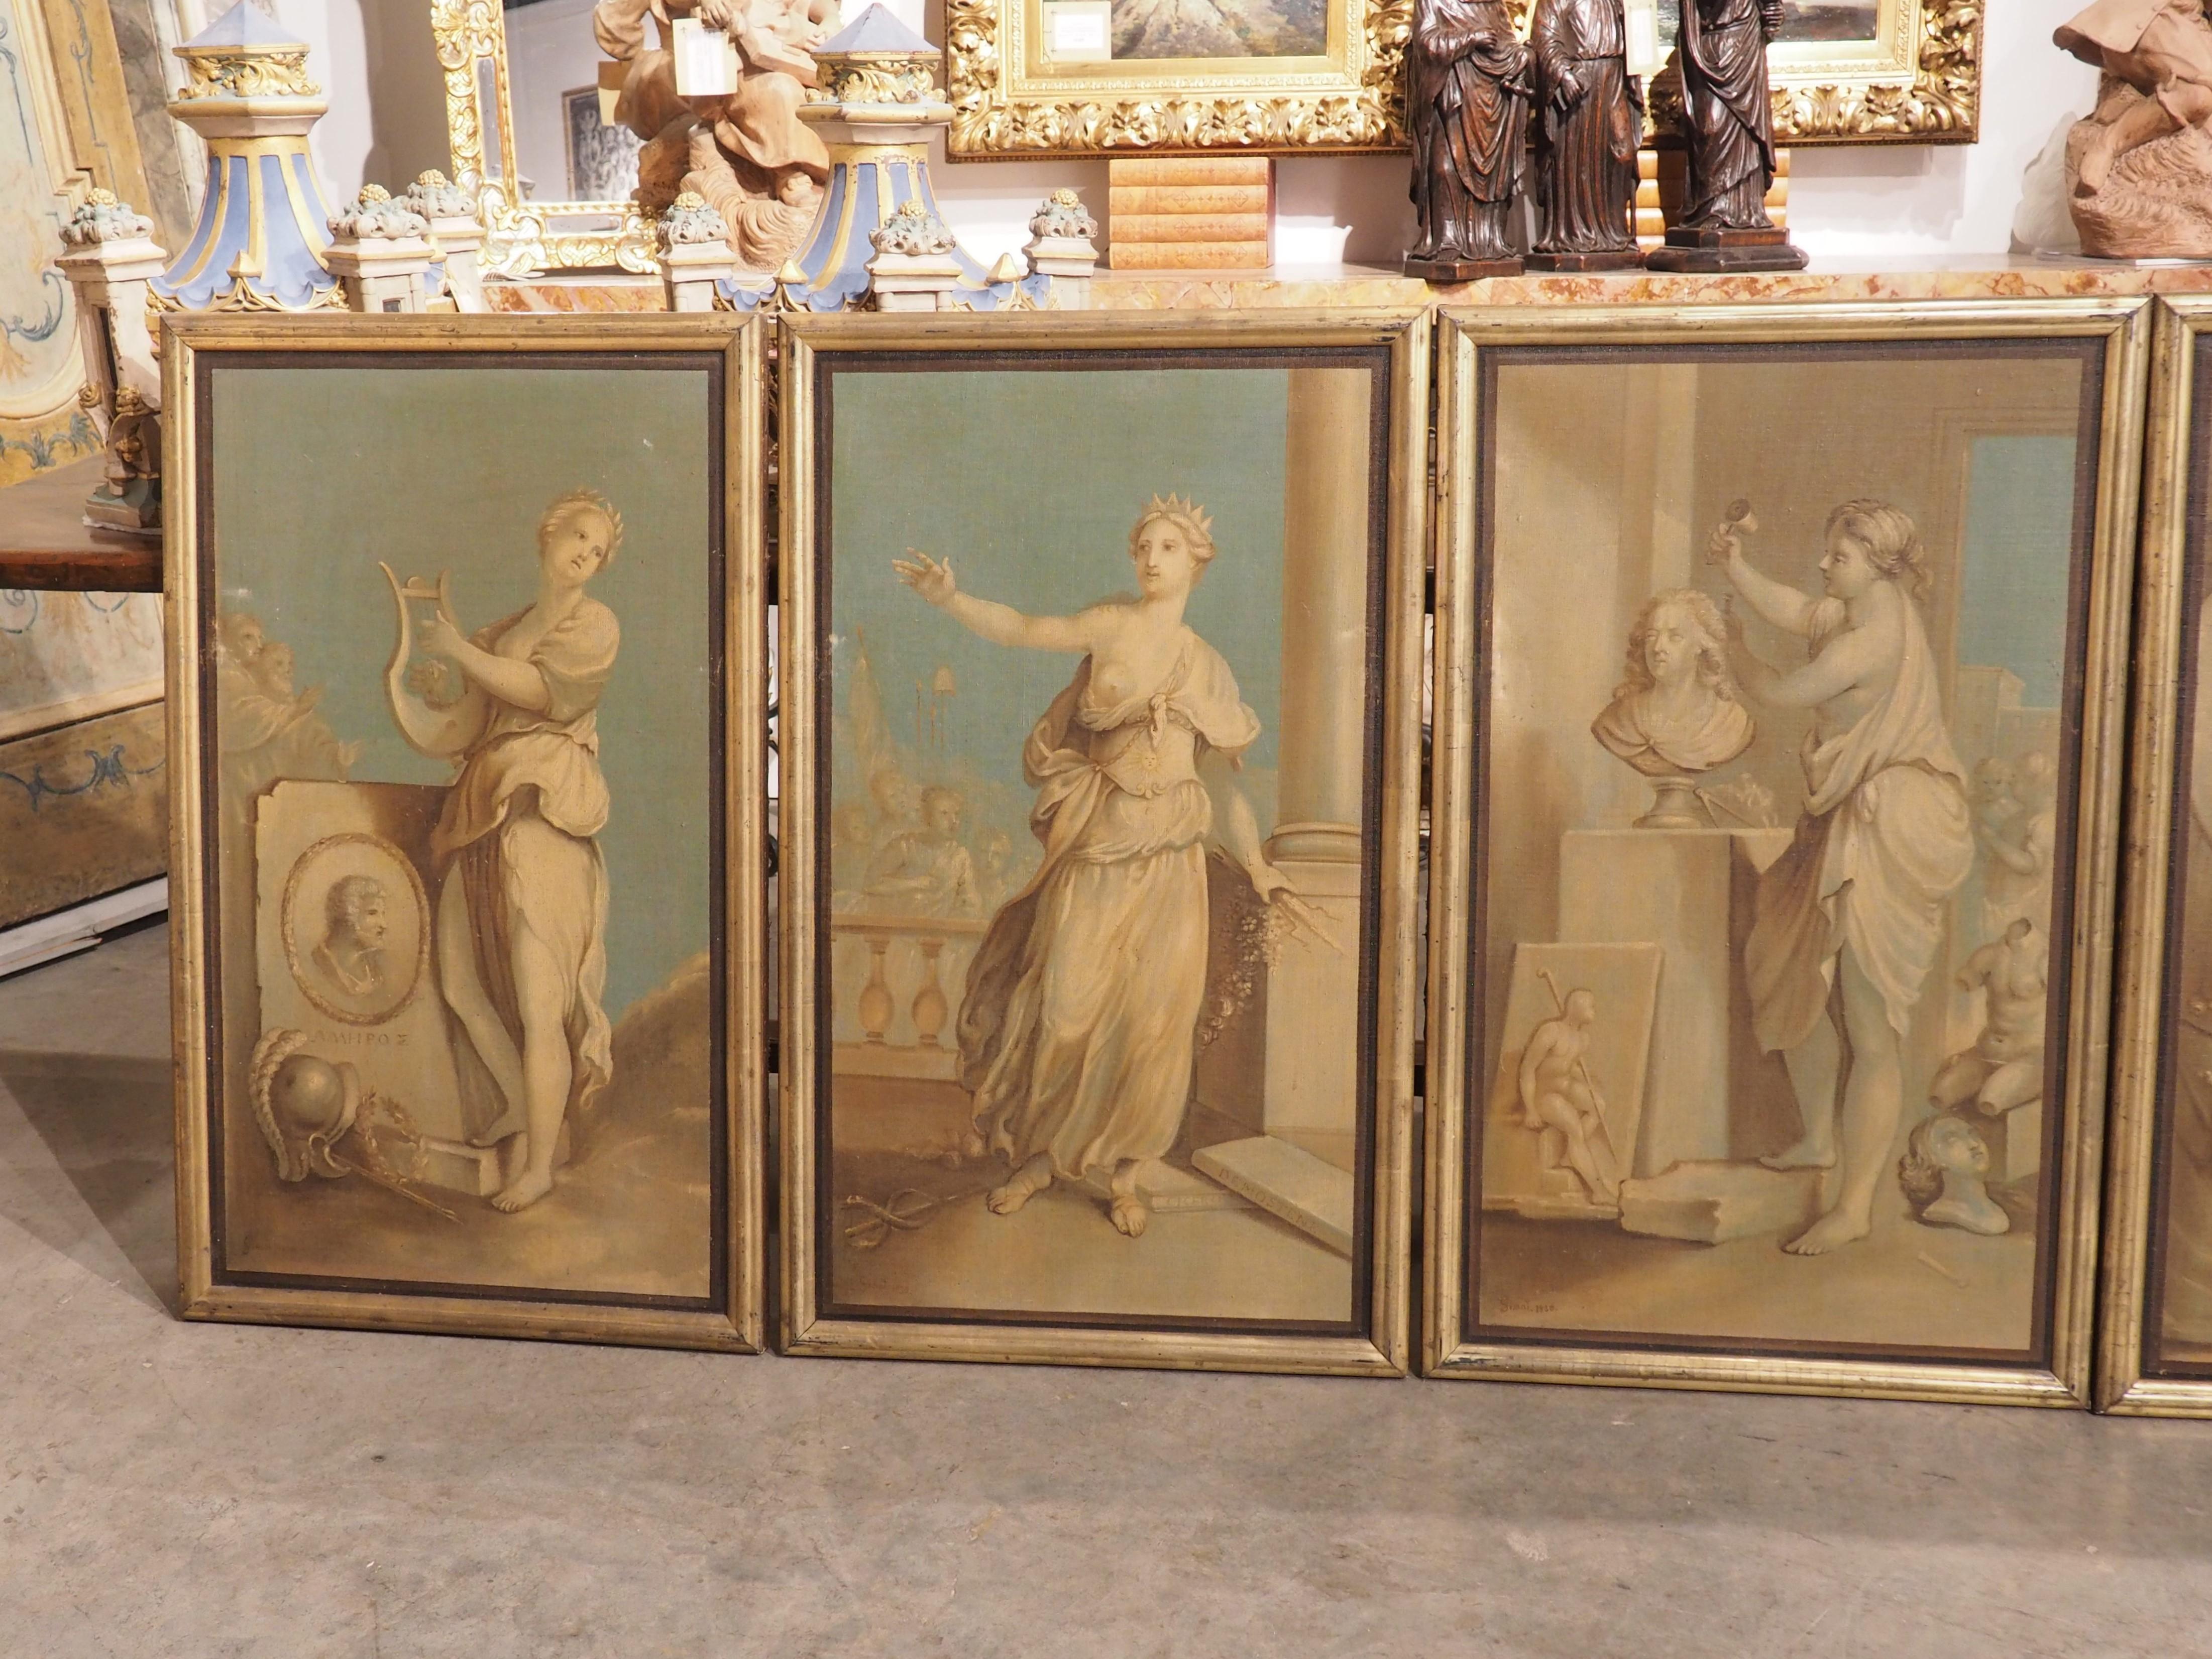 Peint dans le style néoclassique, ce remarquable ensemble de six peintures à l'huile sur toile offre une représentation allégorique captivante des Muses de la mythologie grecque, chacune signée et datée 